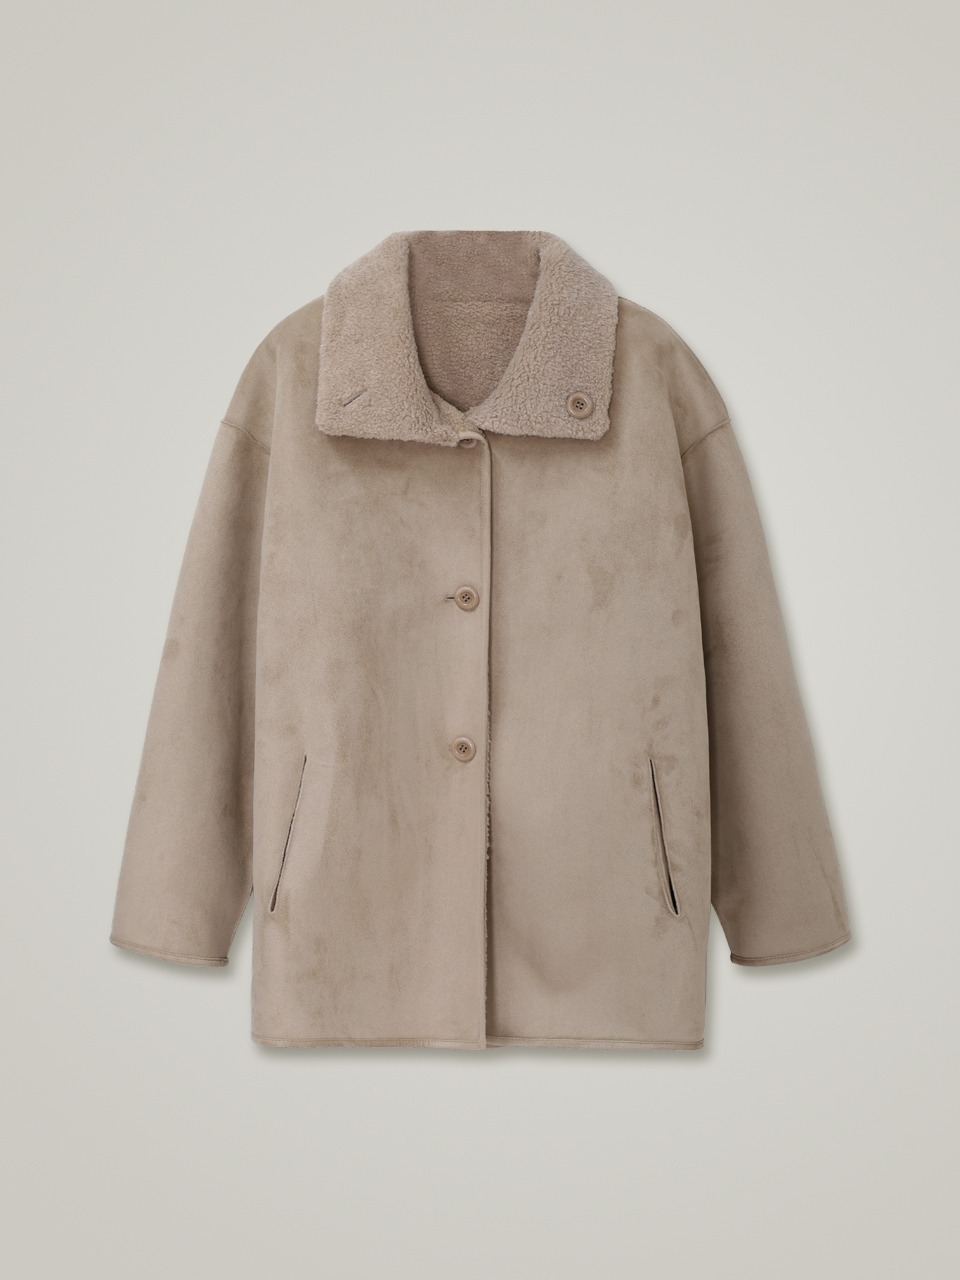 comos 994 reversible shearing mustang half coat (beige suede)